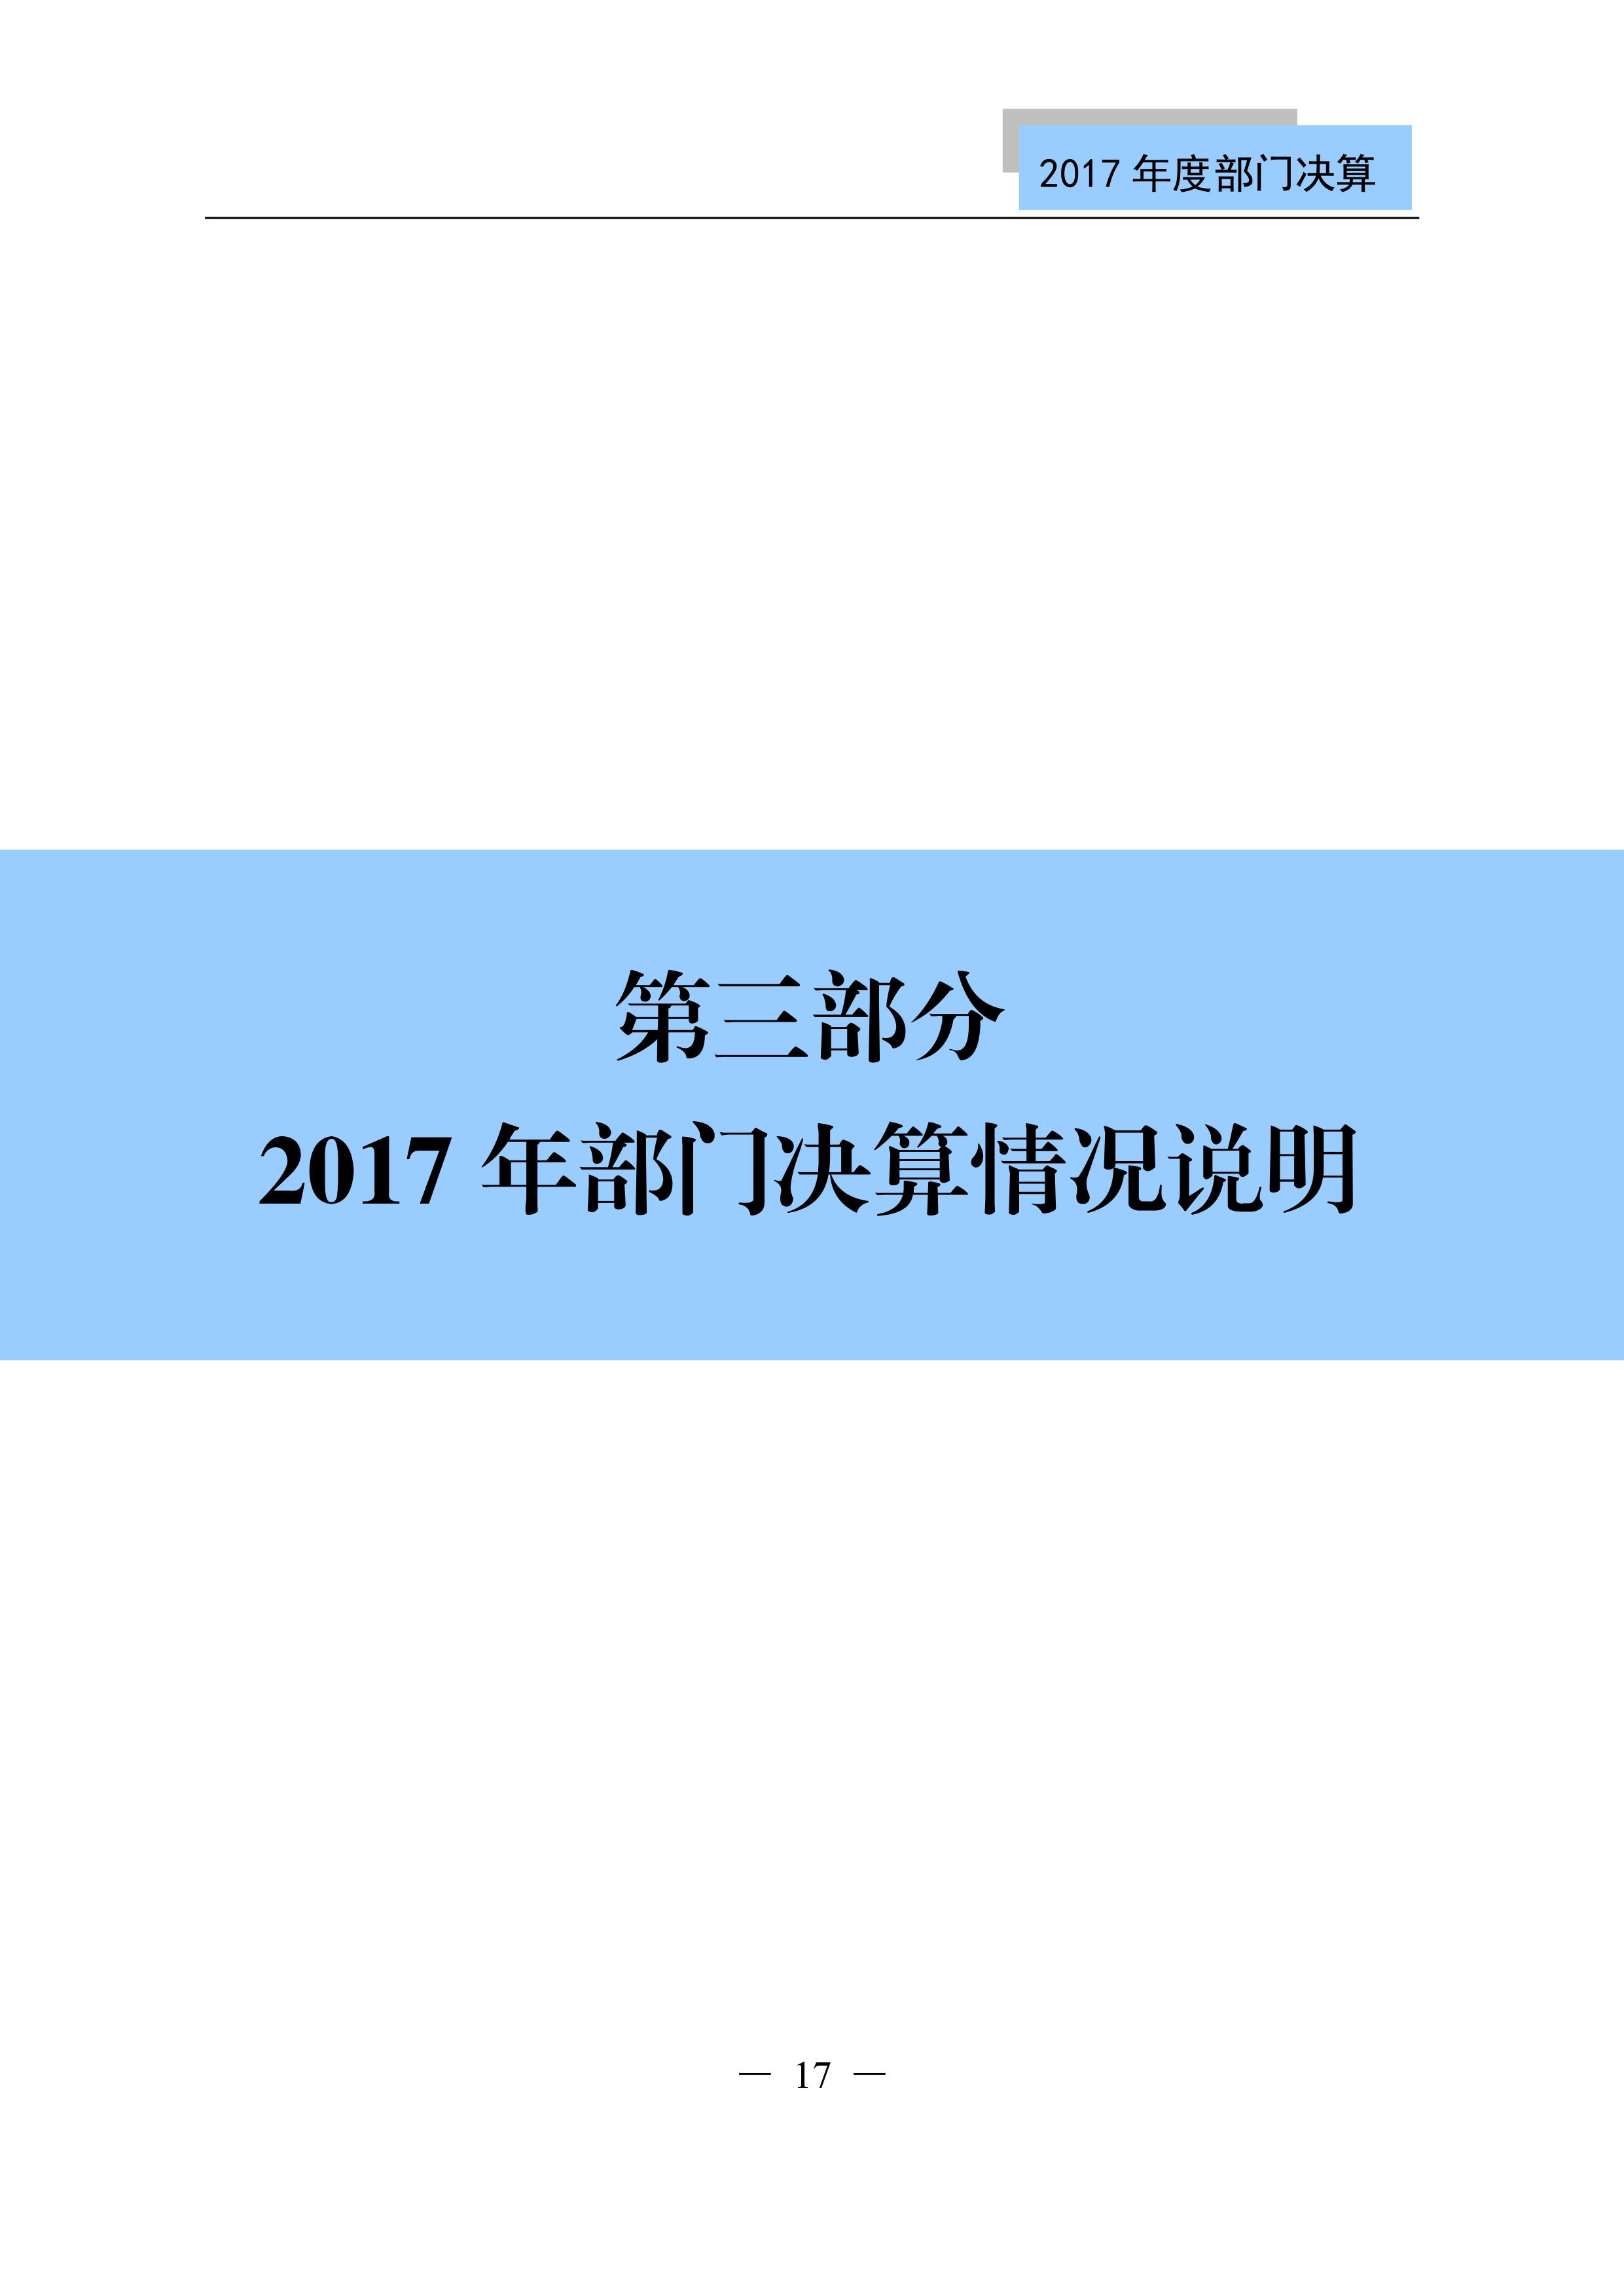 原国家知识产权局2017年度部门决算（全文）